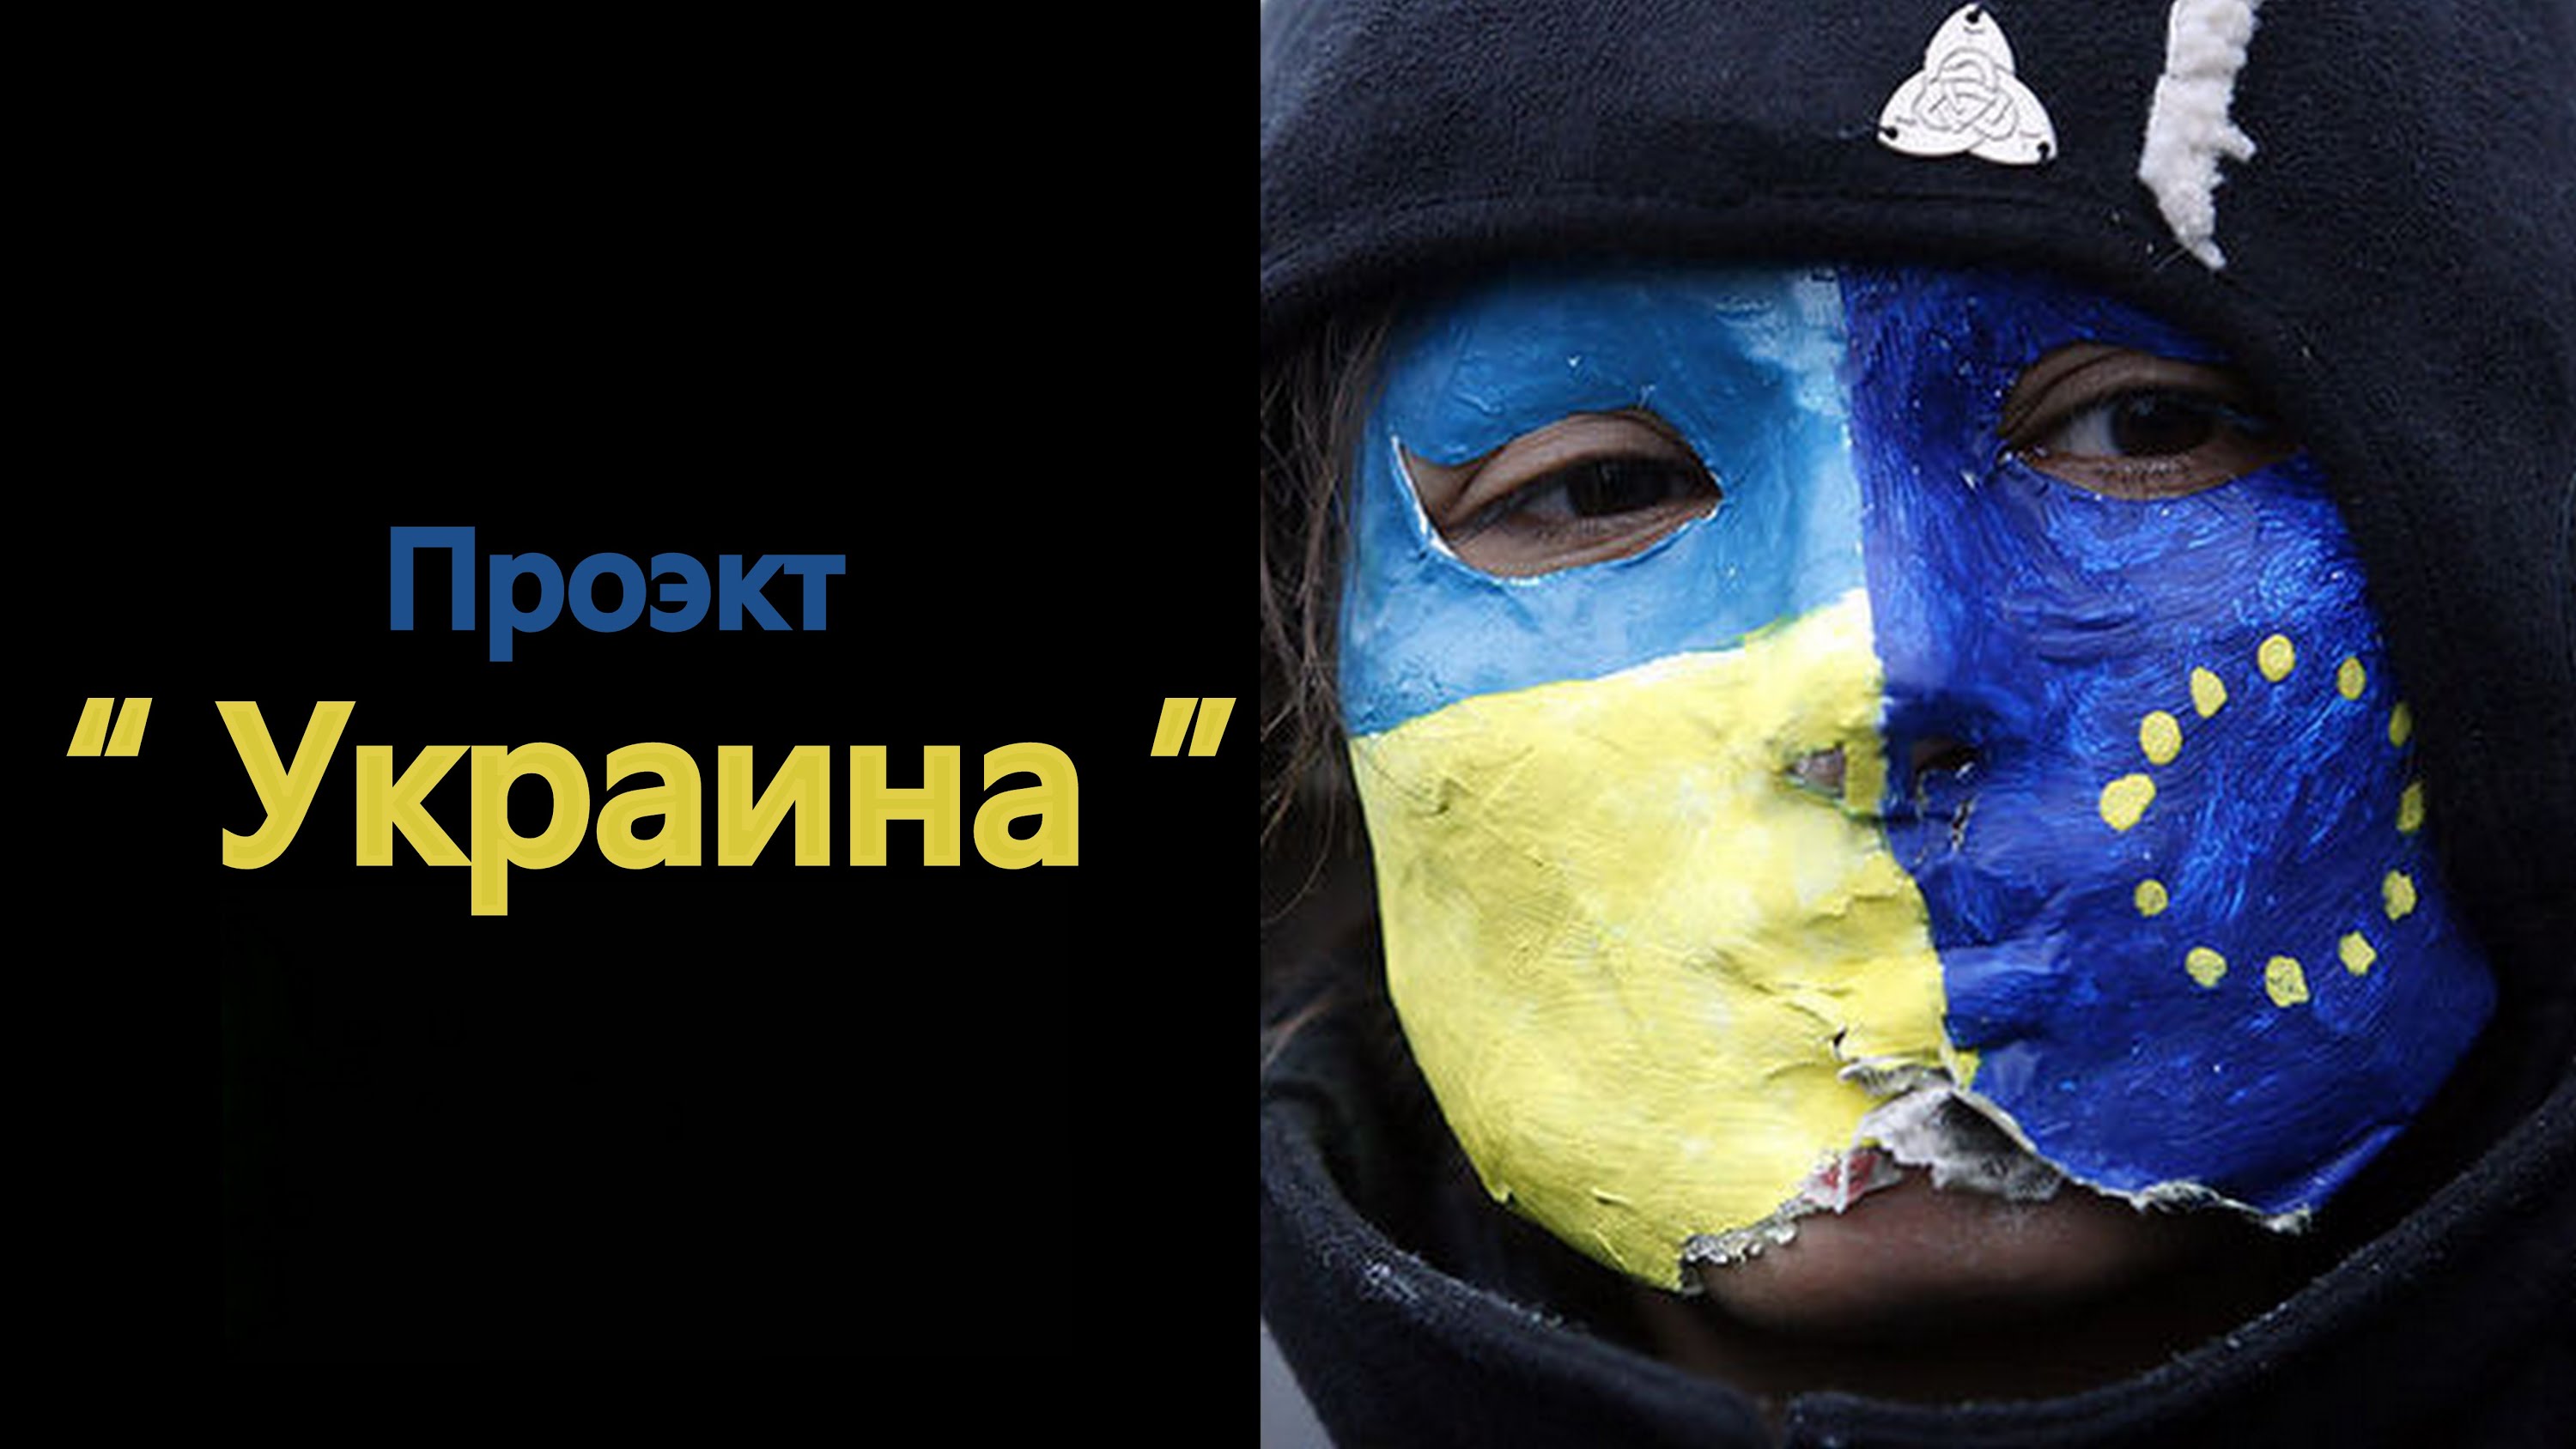 Когда будет закрыт проект “Украина”?